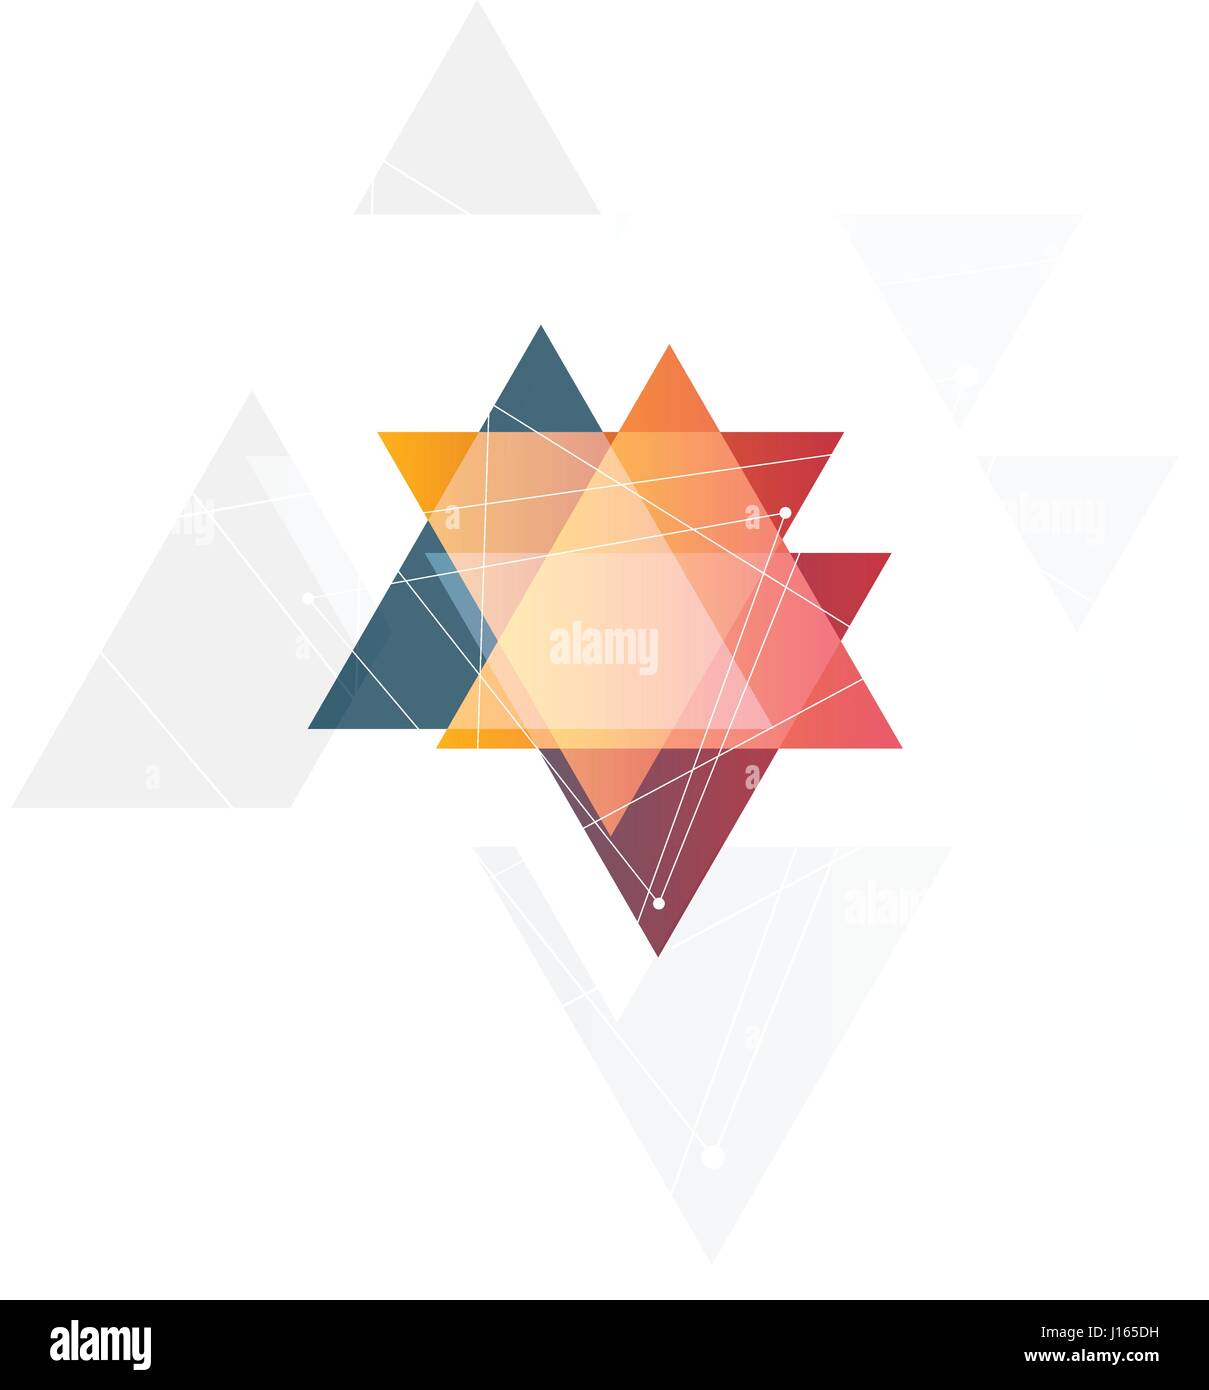 Aislados y rosa abstracta logotipo triangular de color naranja sobre fondo negro, geométricos logotipo triangular de transparencias superpuestas ilustración vectorial Ilustración del Vector